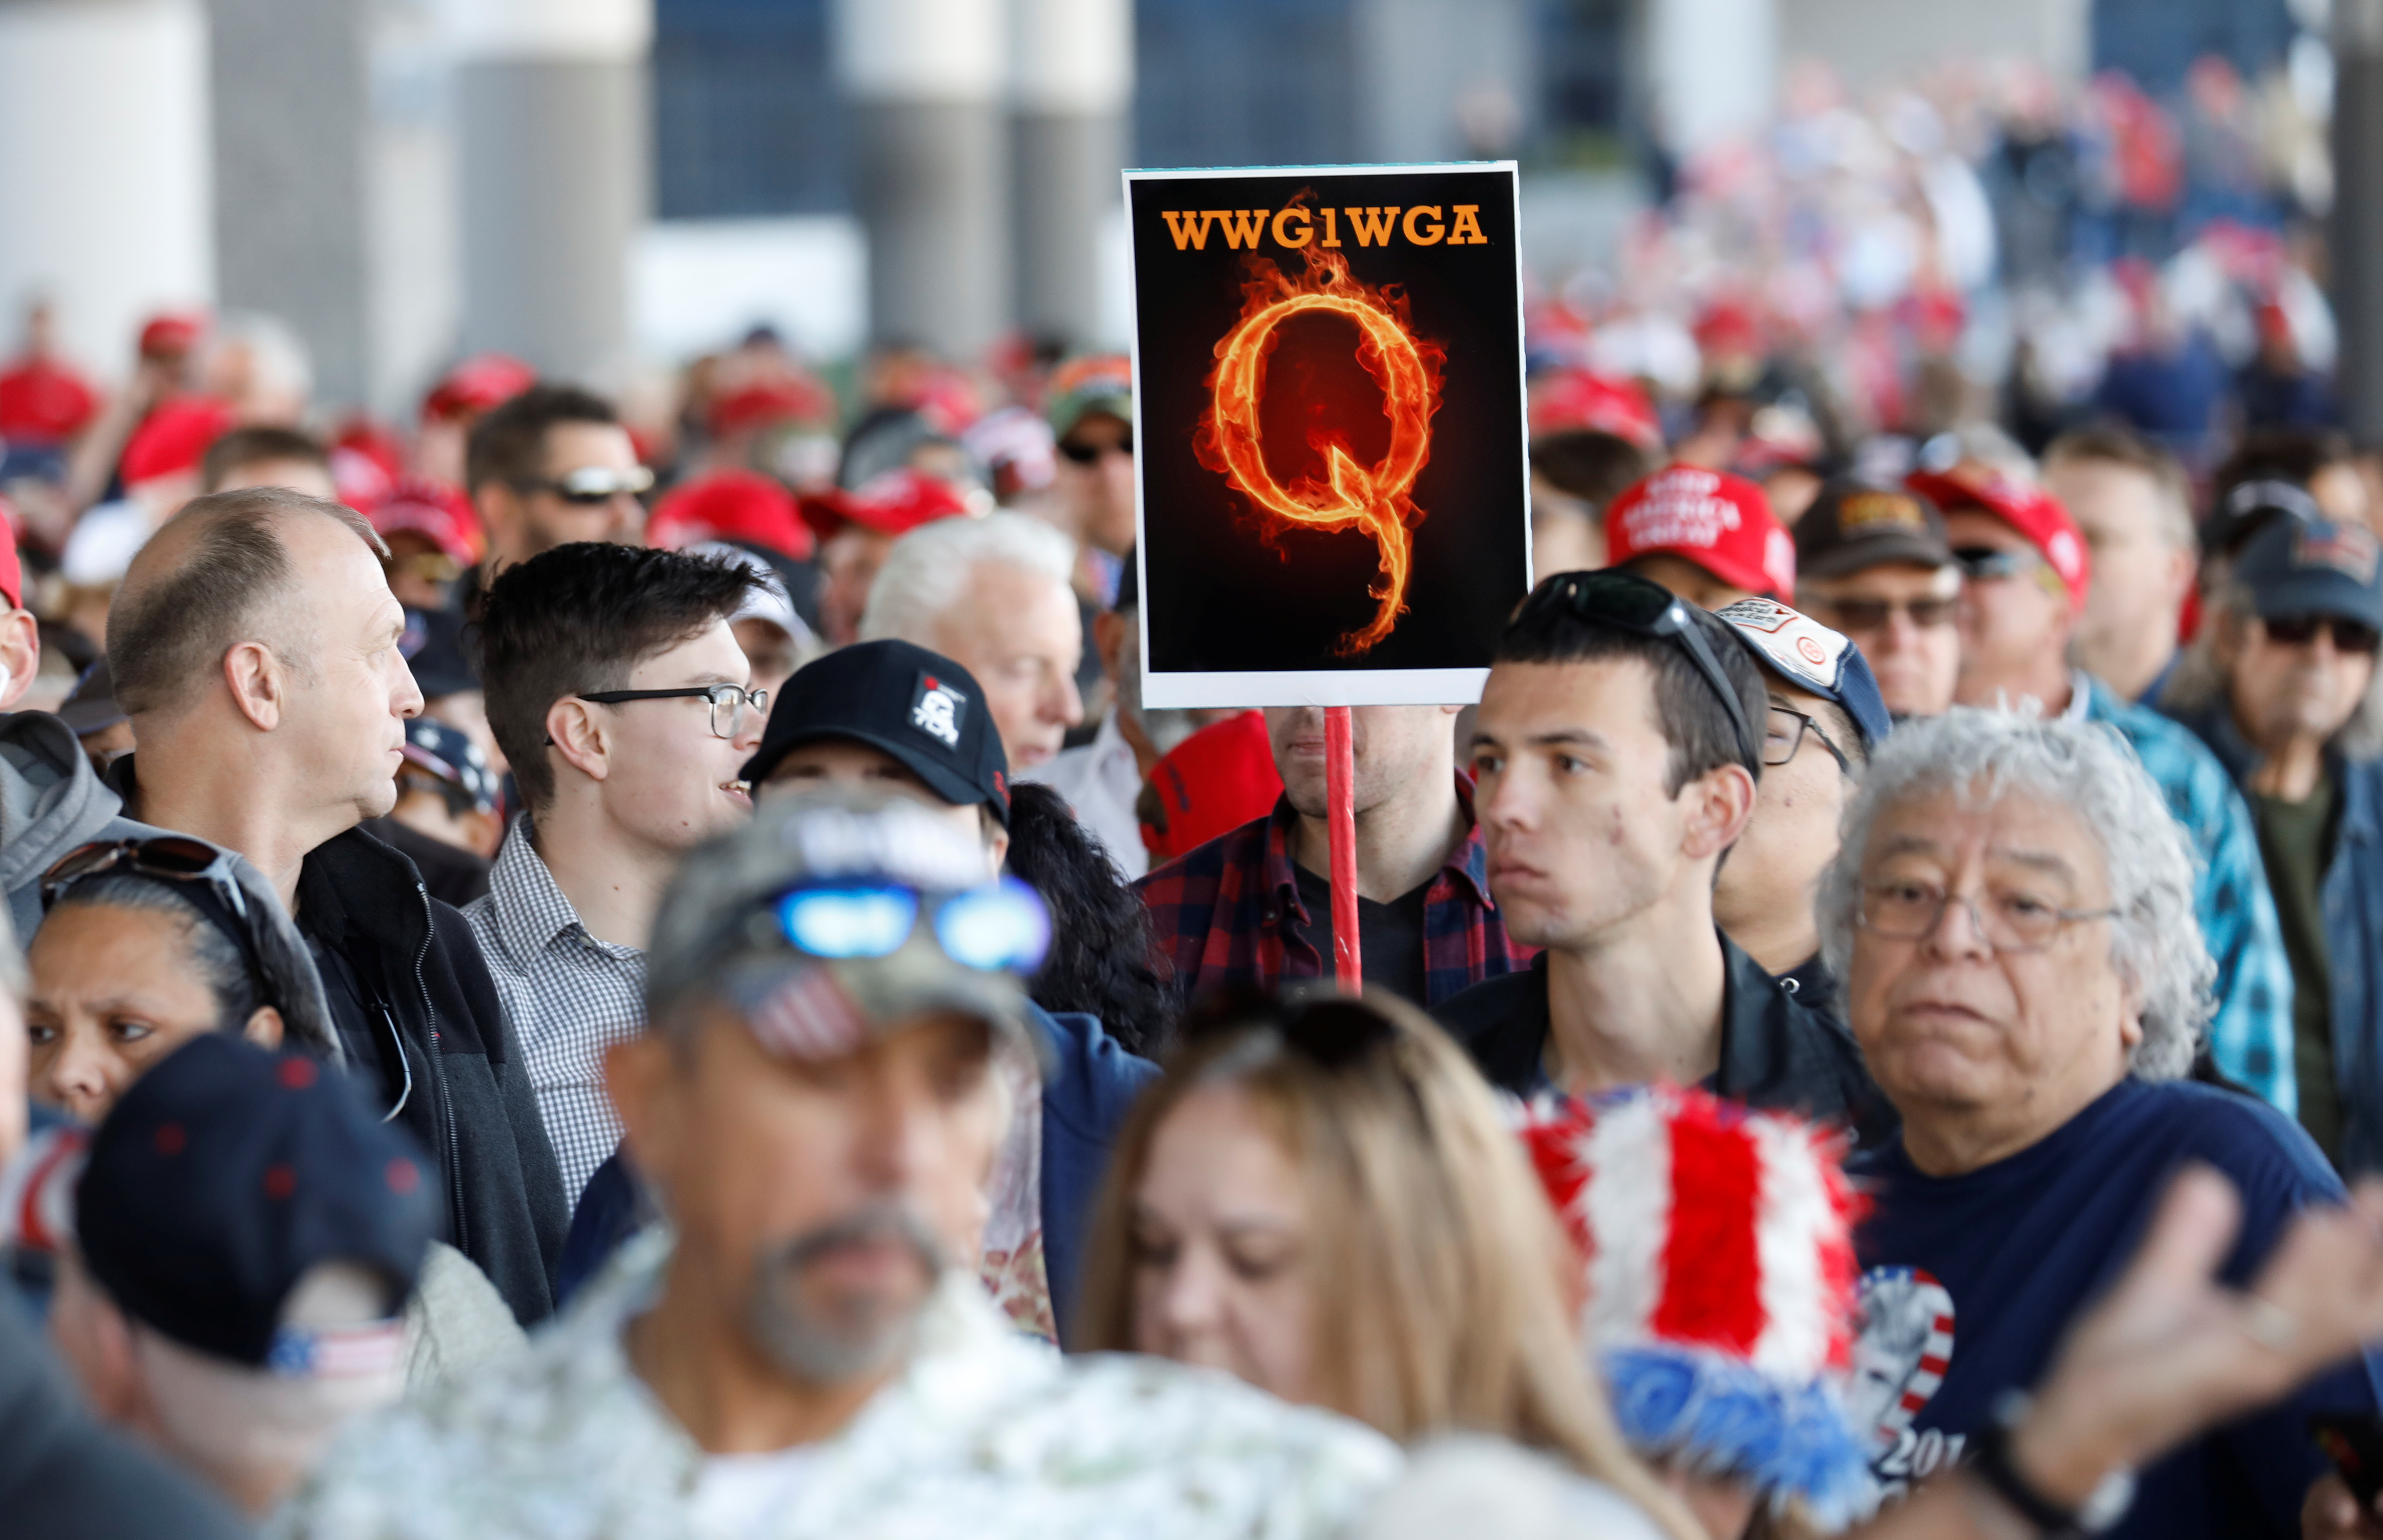 Un hombre en la multitud sostiene un cartel de QAnon con la abreviatura del grupo de su grito de reunión "Donde vamos uno, vamos todos" mientras la multitud se reúne para asistir al mitin de la campaña del Presidente de los Estados Unidos Donald Trump en el Centro de Convenciones de Las Vegas en Las Vegas, Nevada, EE.UU., el 21 de febrero de 2020 (REUTERS/Patrick Fallon)